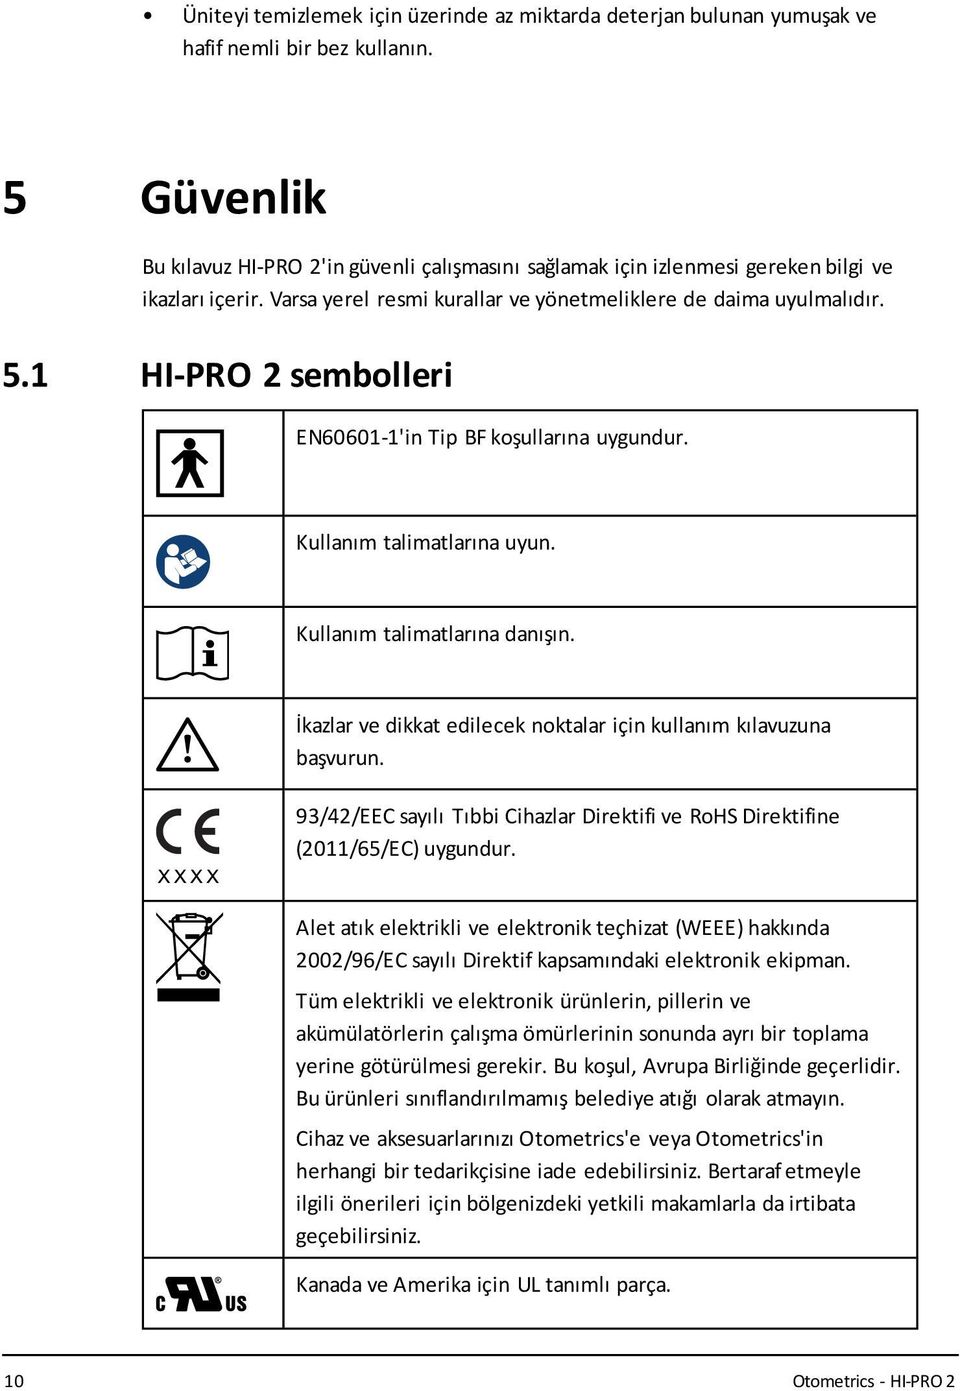 1 HI-PRO 2 sembolleri EN60601-1'in Tip BF koşullarına uygundur. Kullanım talimatlarına uyun. Kullanım talimatlarına danışın. İkazlar ve dikkat edilecek noktalar için kullanım kılavuzuna başvurun.